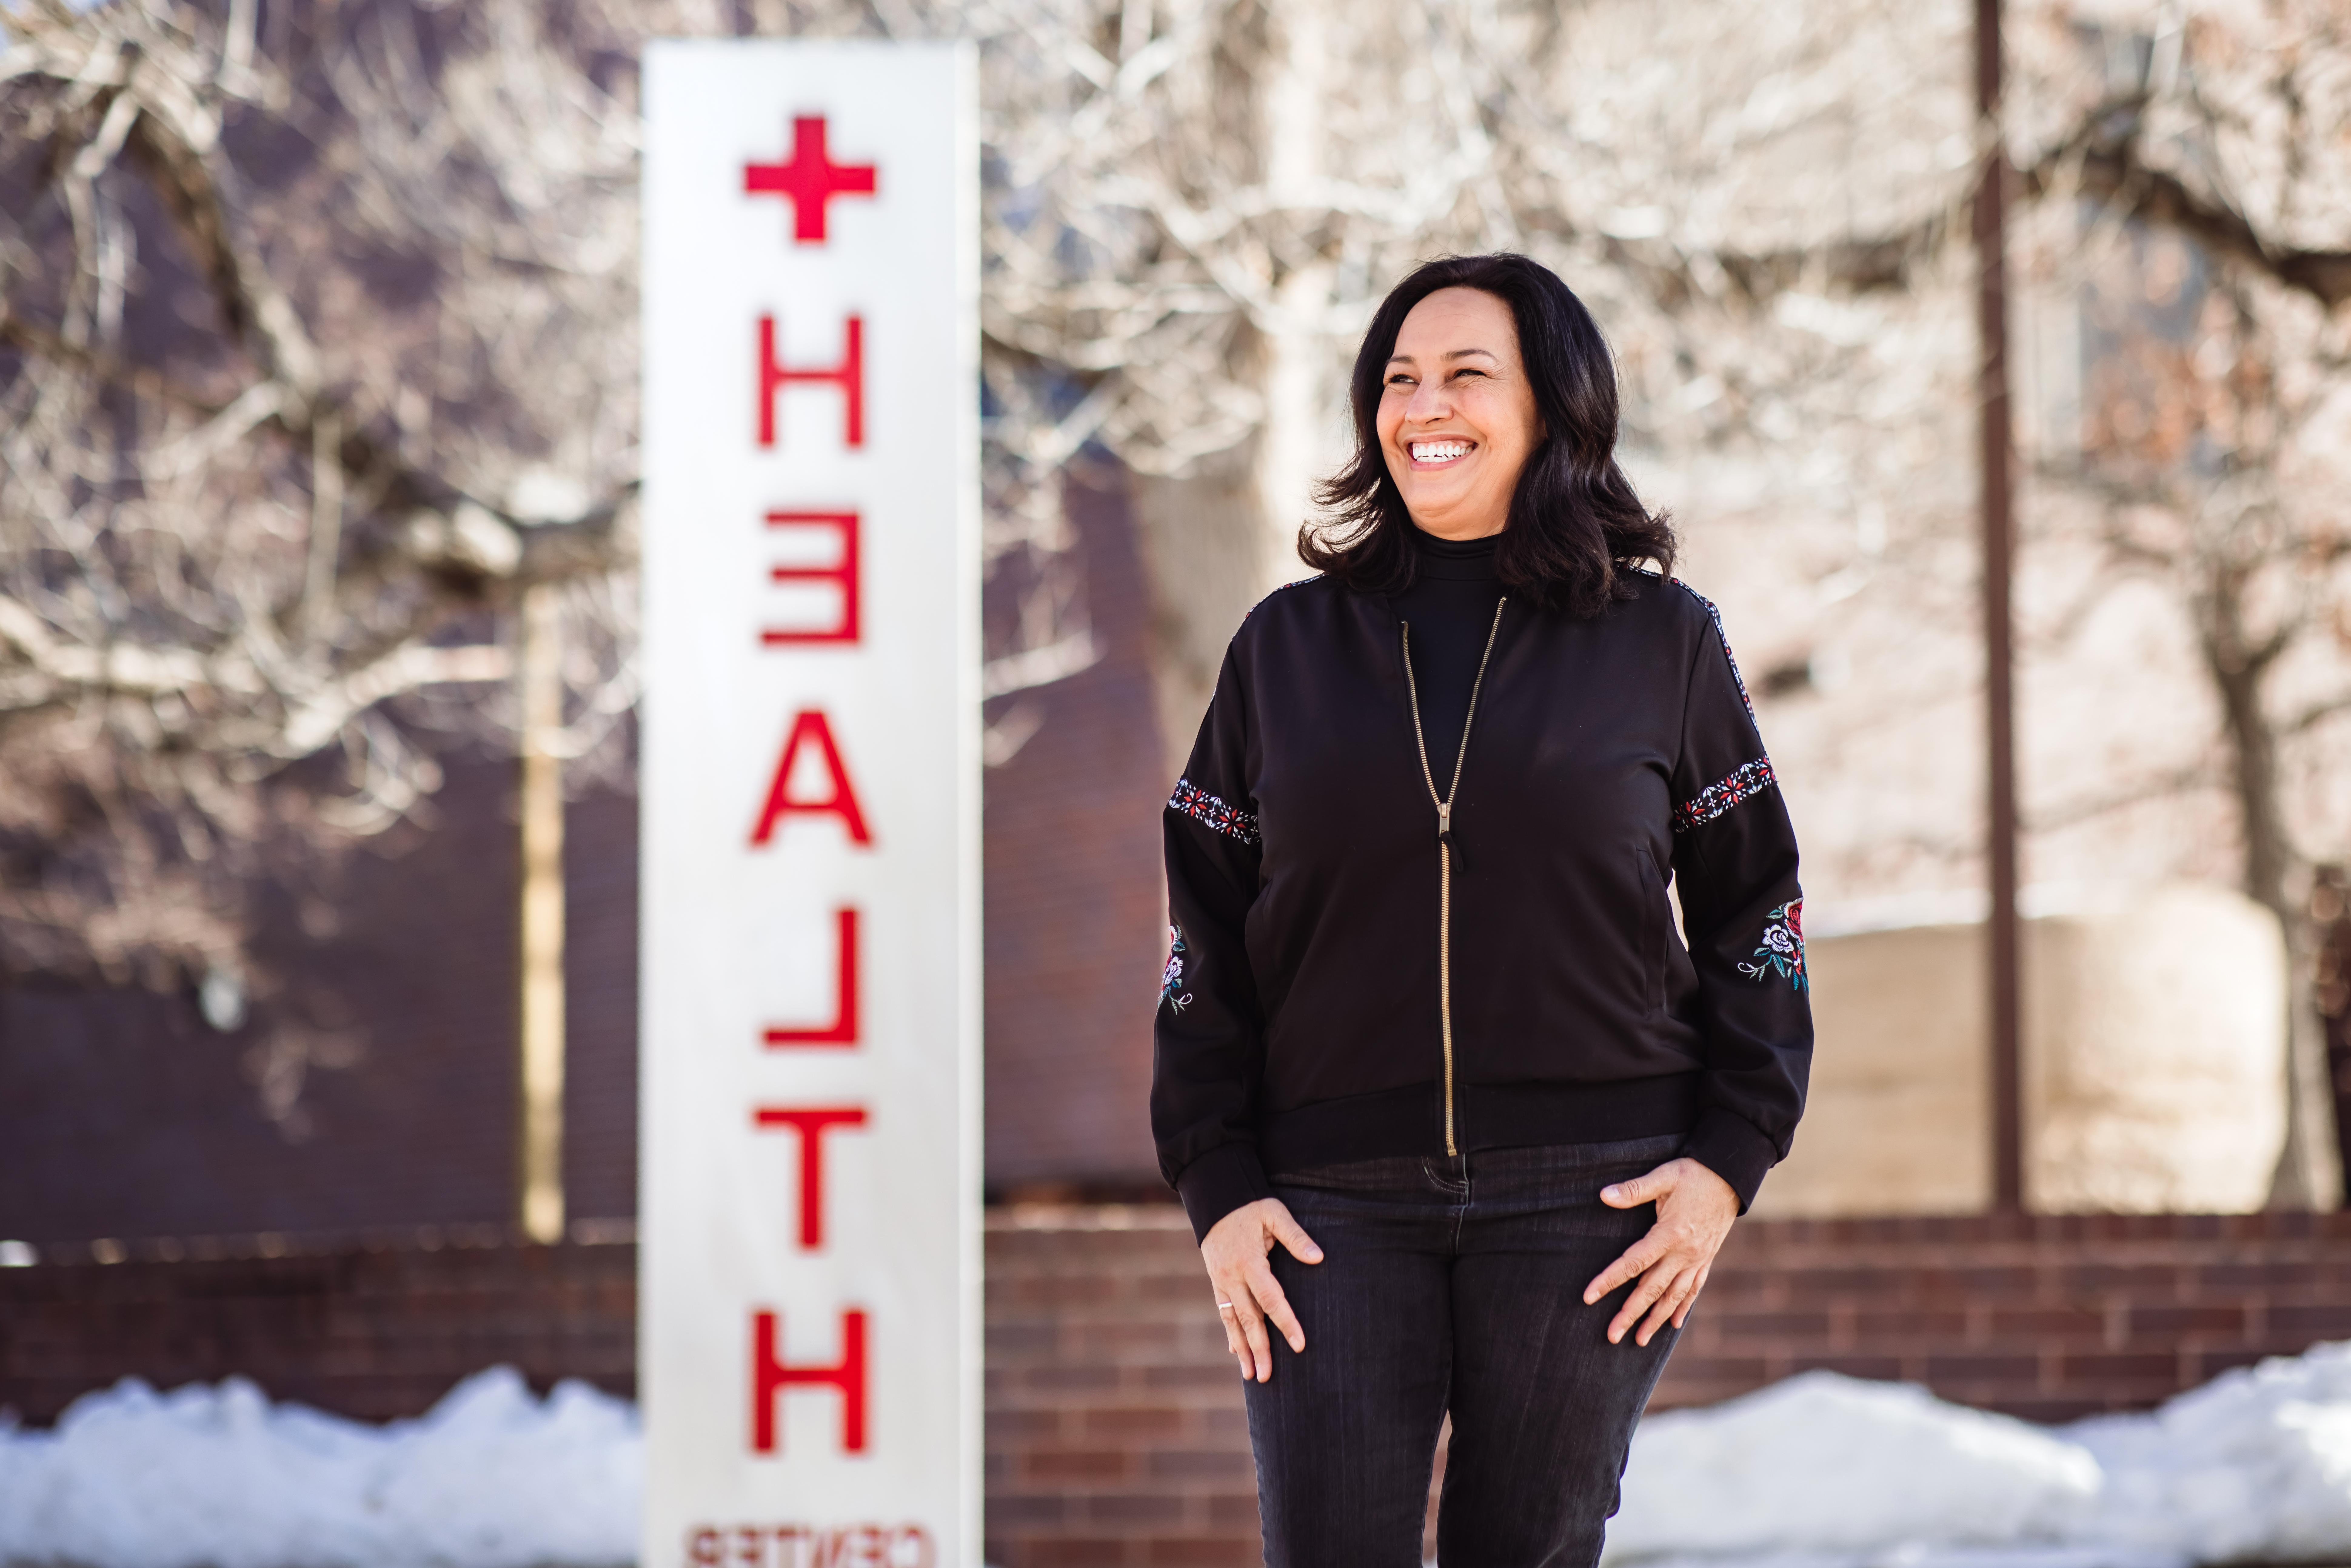 密歇根州立大学丹佛分校的生活方式医学专业, Maria Freyta, 被选为美国银行项目的三位导师之一. Freyta将指导三个主修健康领域的学生. 艾莉森·麦克拉伦摄